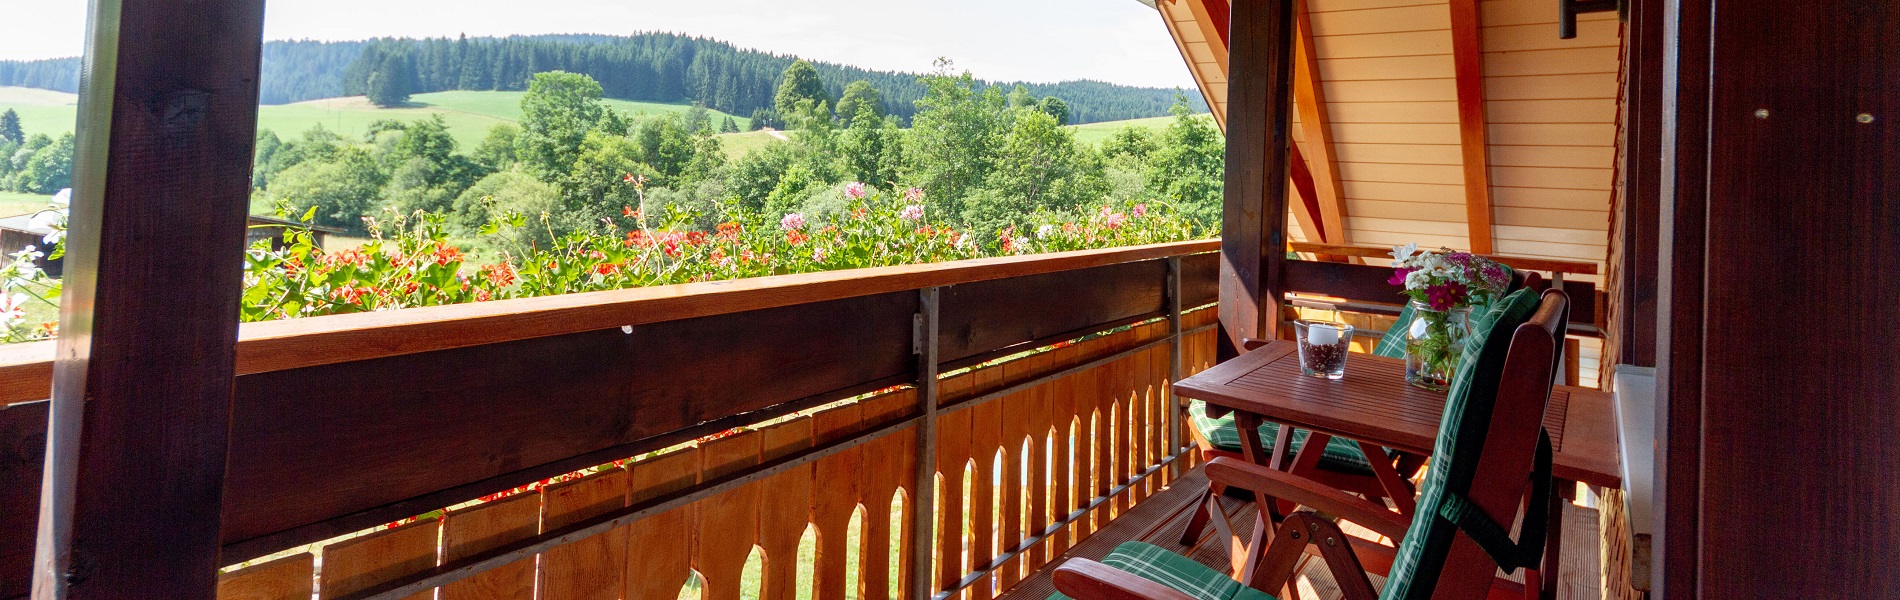 SLIDER: Ferienwohnung Kamille mit Ausblick vom Balkon